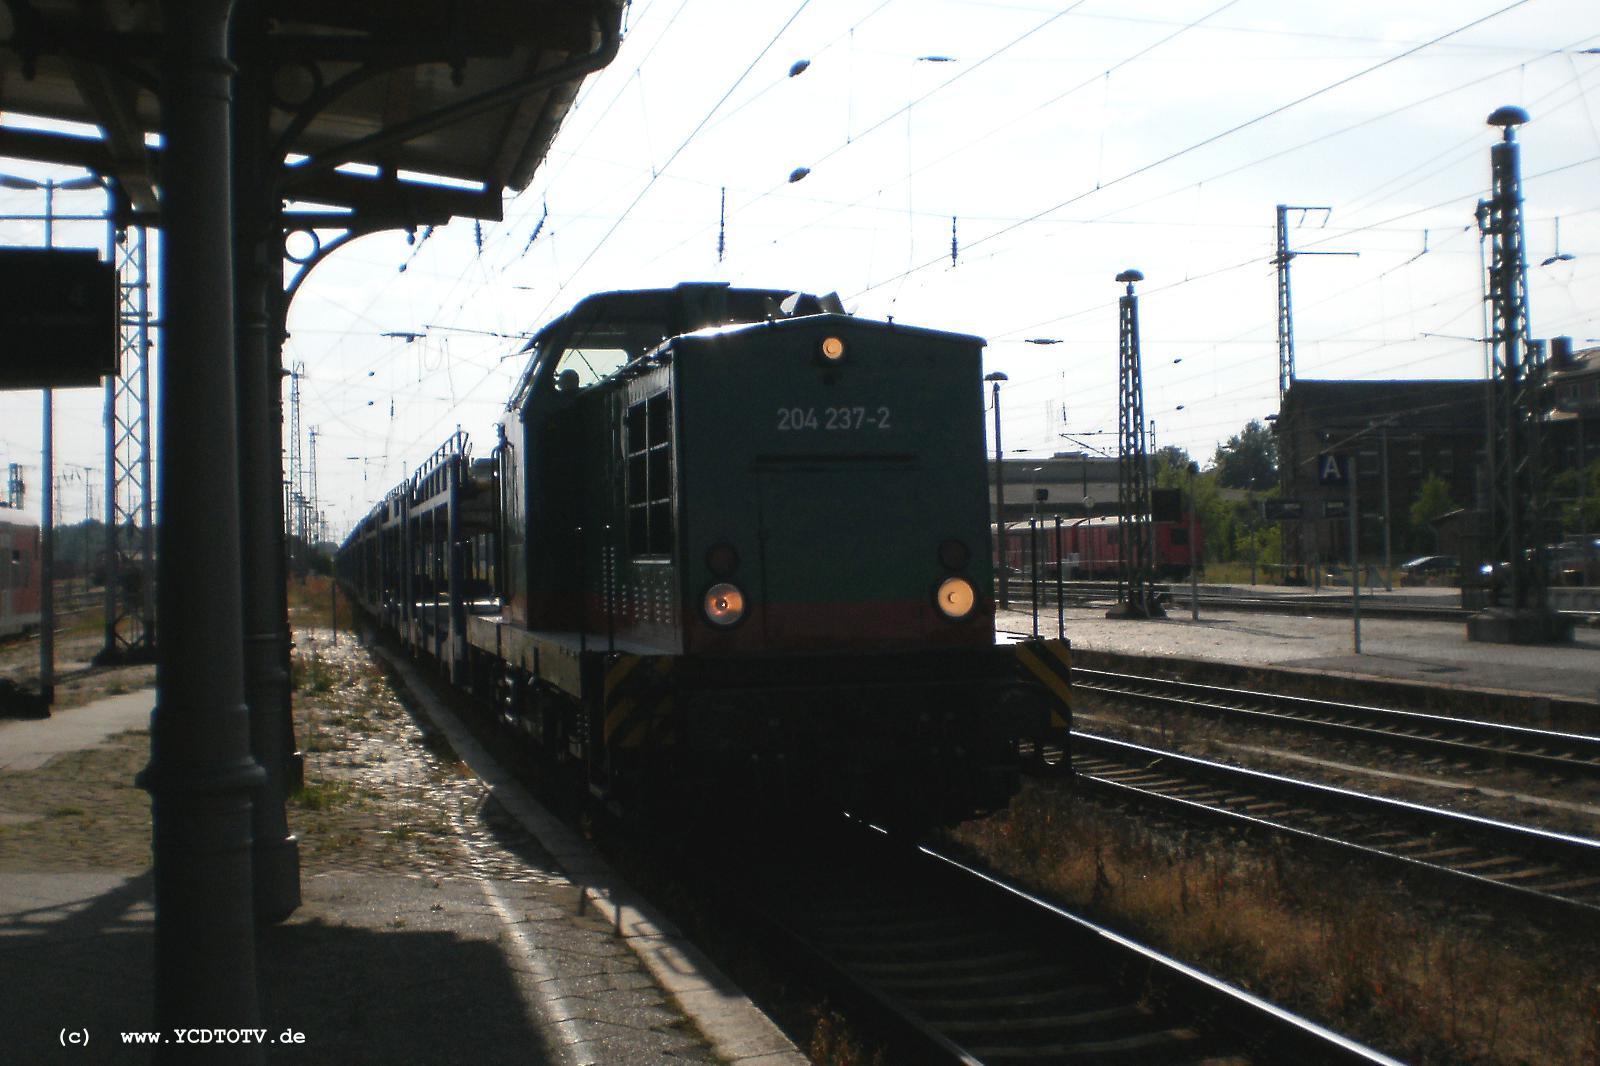 Bahnhof Stendal 02.07.2010, 204 237-2 